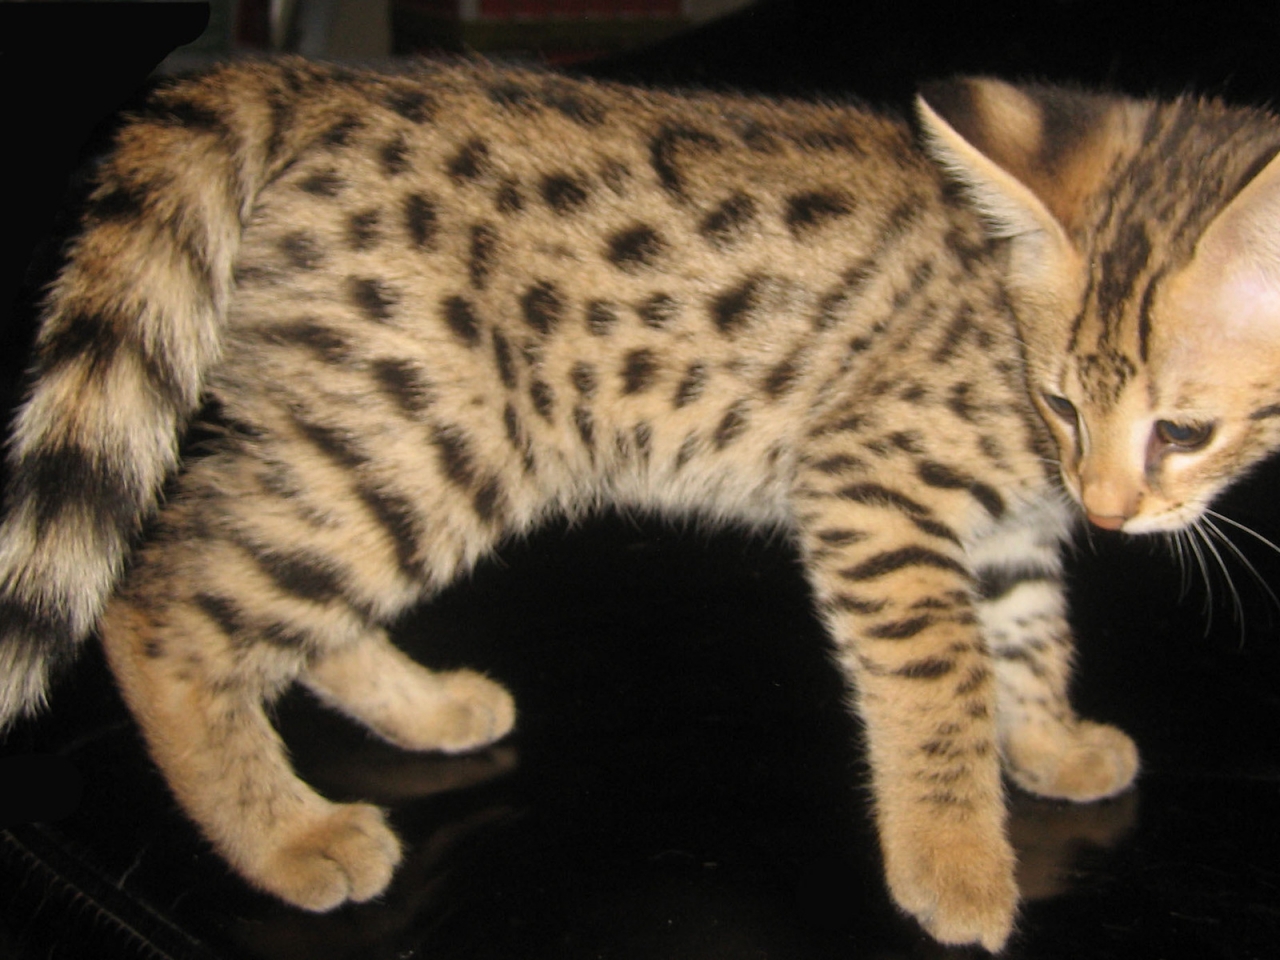 Savannah Kitten for 1280 x 960 resolution